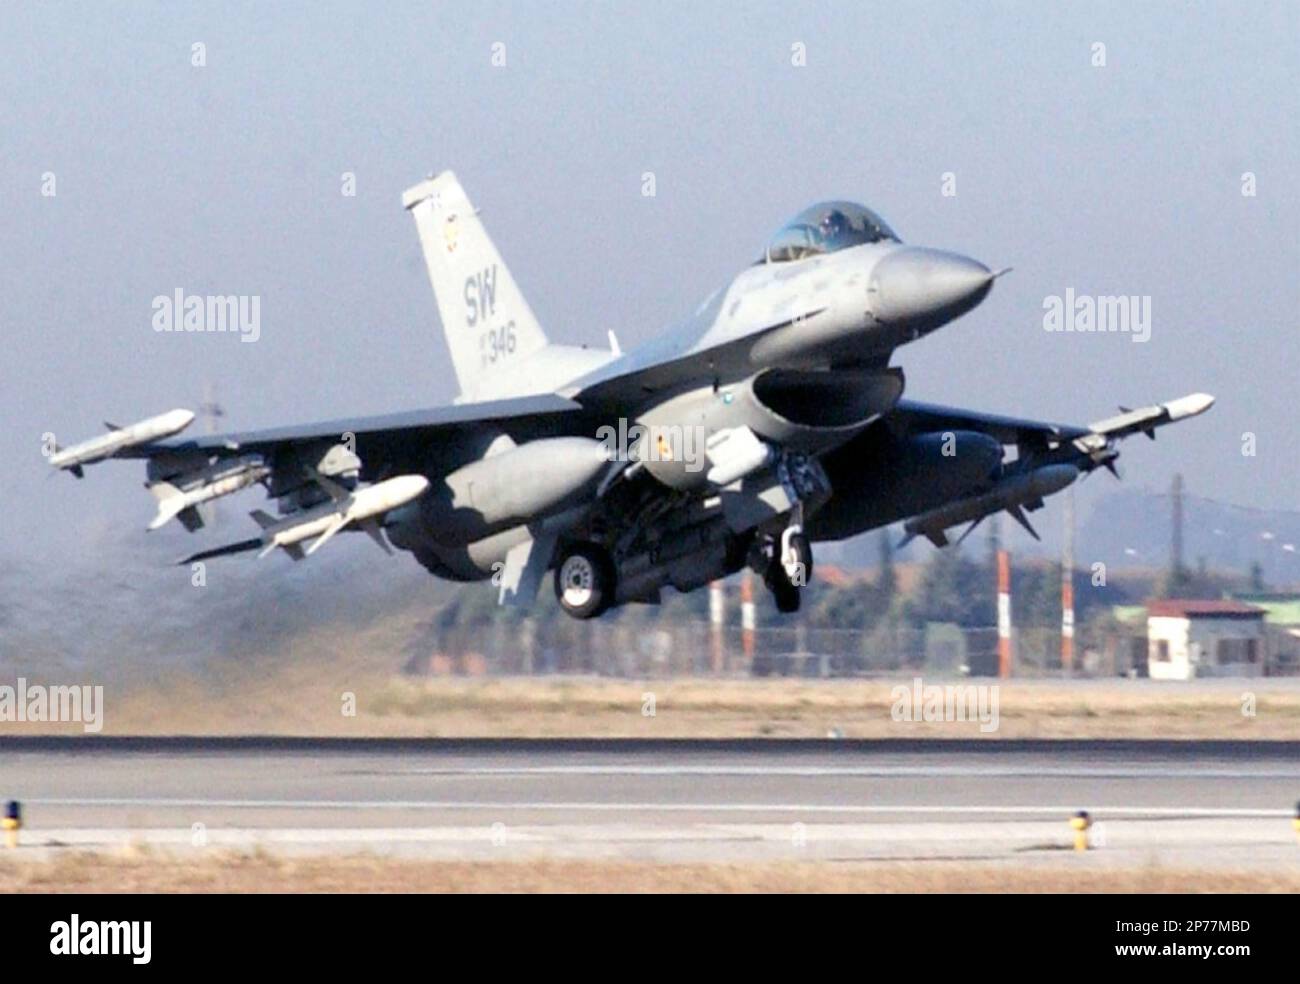 GENERAL DYNAMICS F-16 combattente Falcon multirolo. Un F-16CJ della USAF 20th Fighter Wing dotato di un mix di missili aria-aria, missili anti-radiazioni e serbatoi del carburante esterni. Foto»: USAF Foto Stock